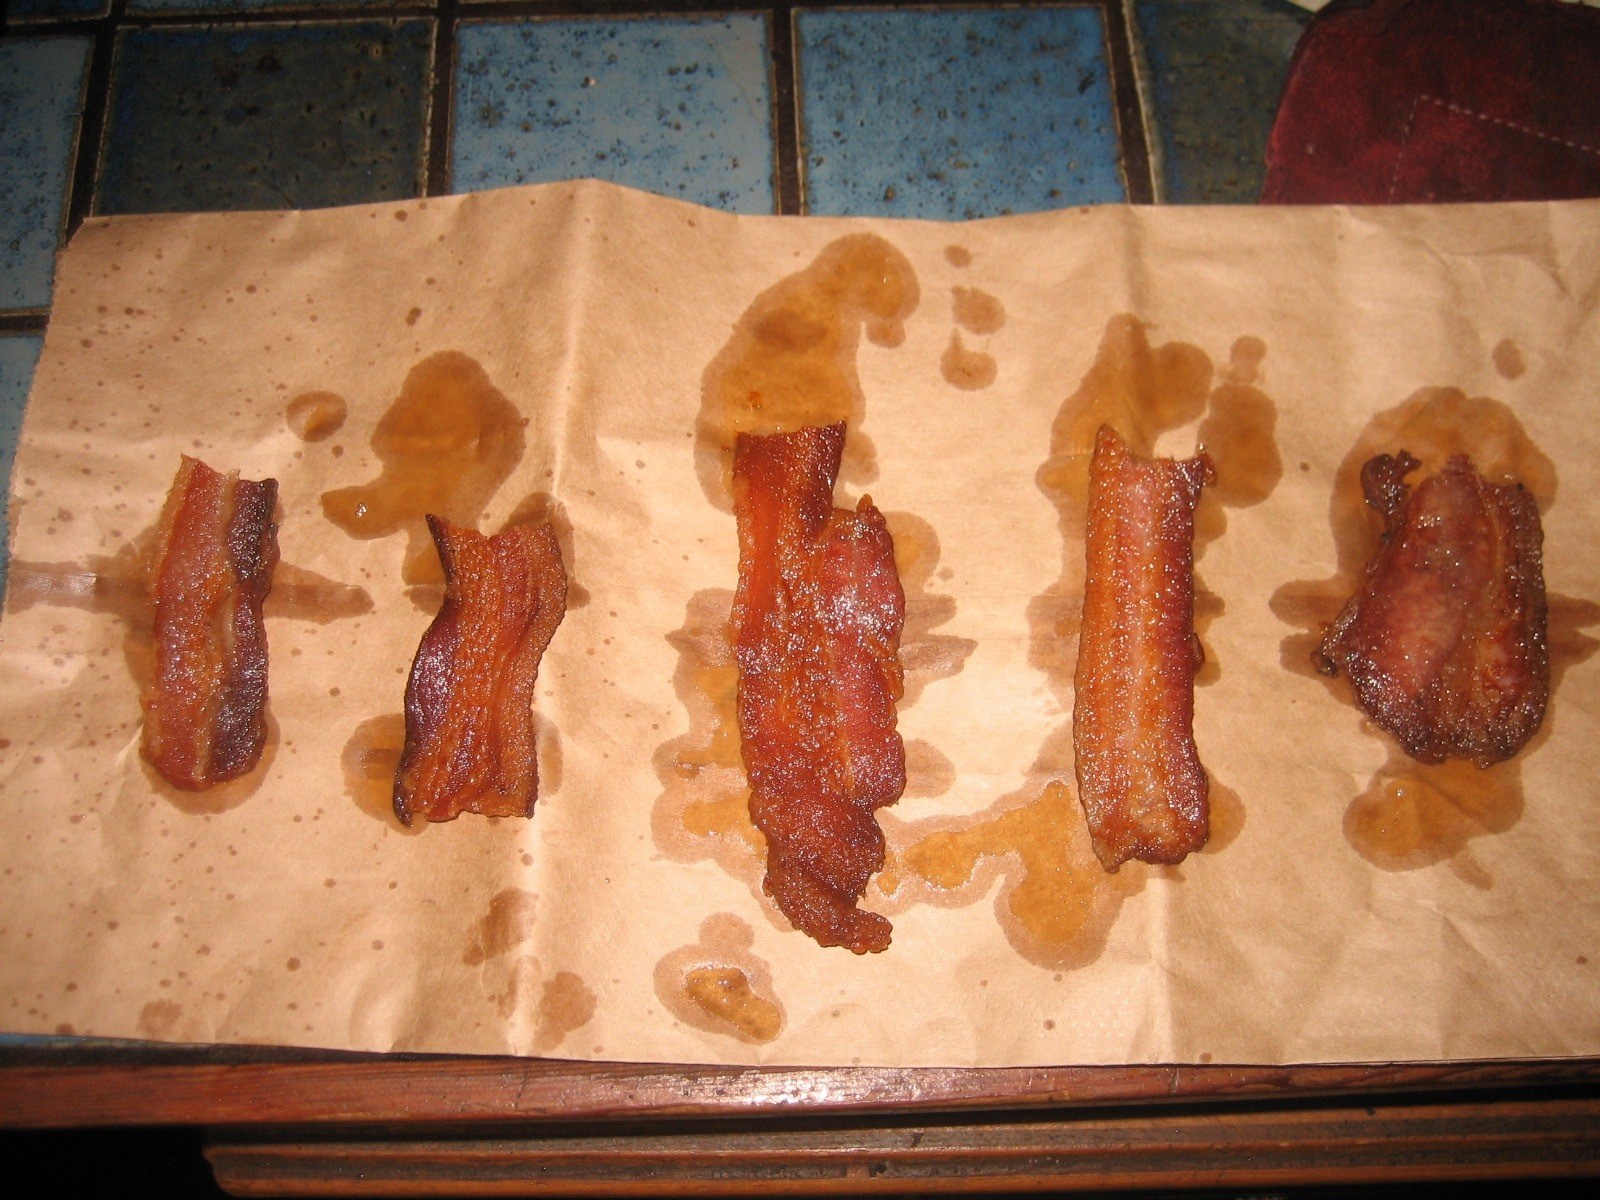 Freshly cooked bacon